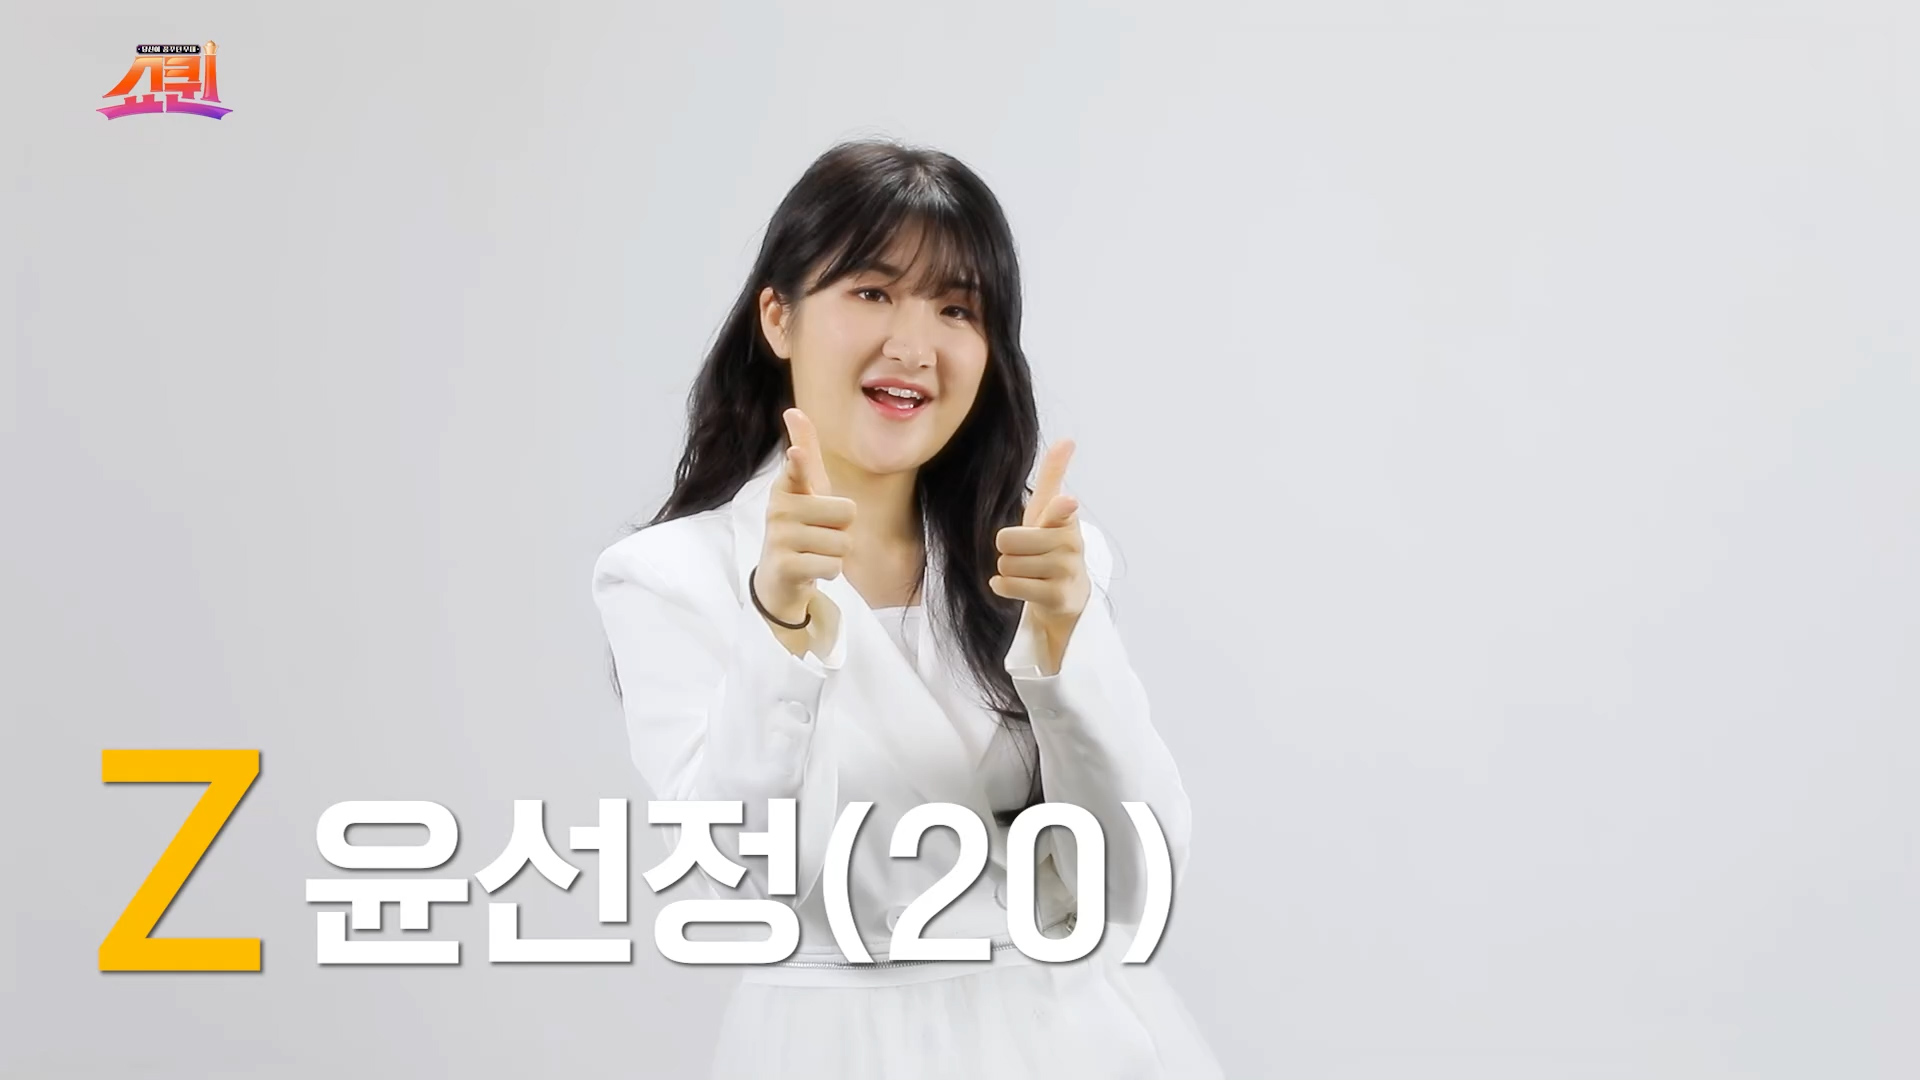 [쇼퀸] Z세대+윤선정 - 본선참가자   게시글 이미지